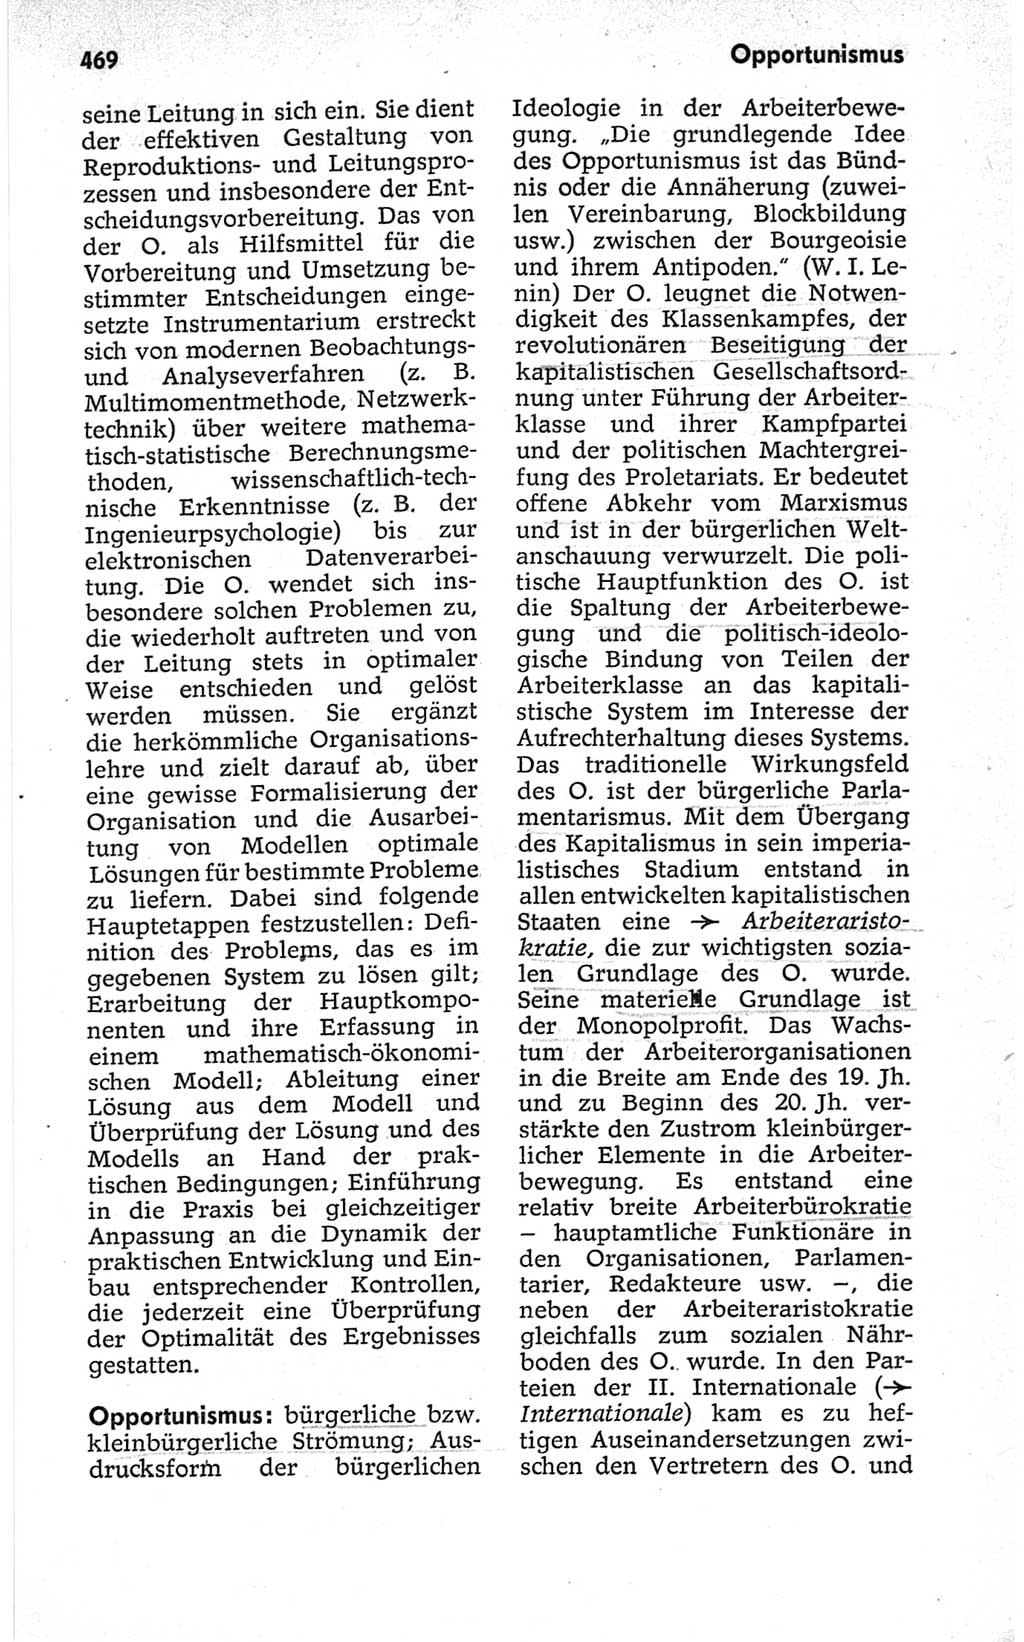 Kleines politisches Wörterbuch [Deutsche Demokratische Republik (DDR)] 1967, Seite 469 (Kl. pol. Wb. DDR 1967, S. 469)